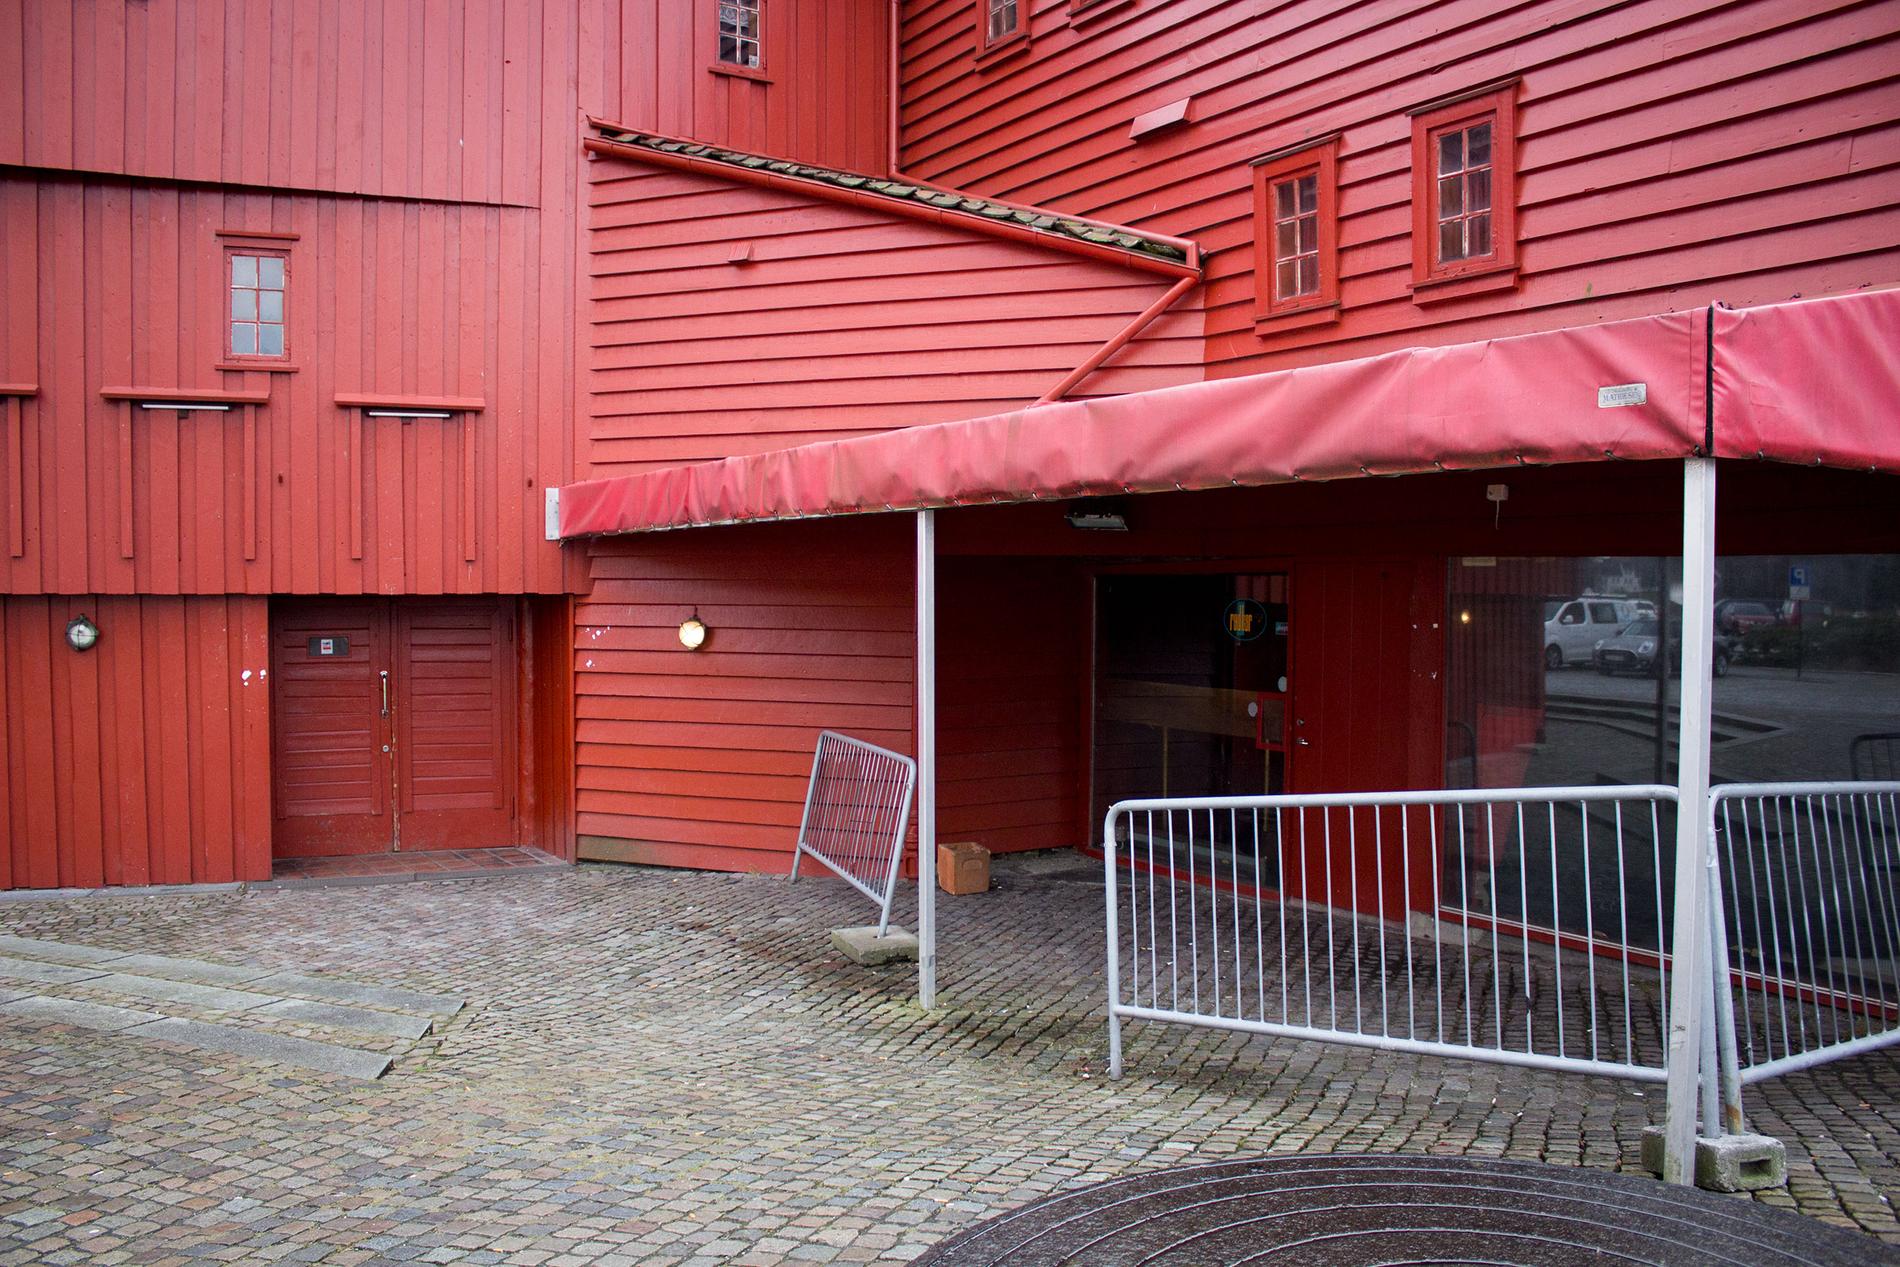 Til høyre i bildet kommer inngangen til Mulligans Irish Pub, en del av Old Irish Pub-kjeden som fikk skjenkebevilling allerede i februar. 